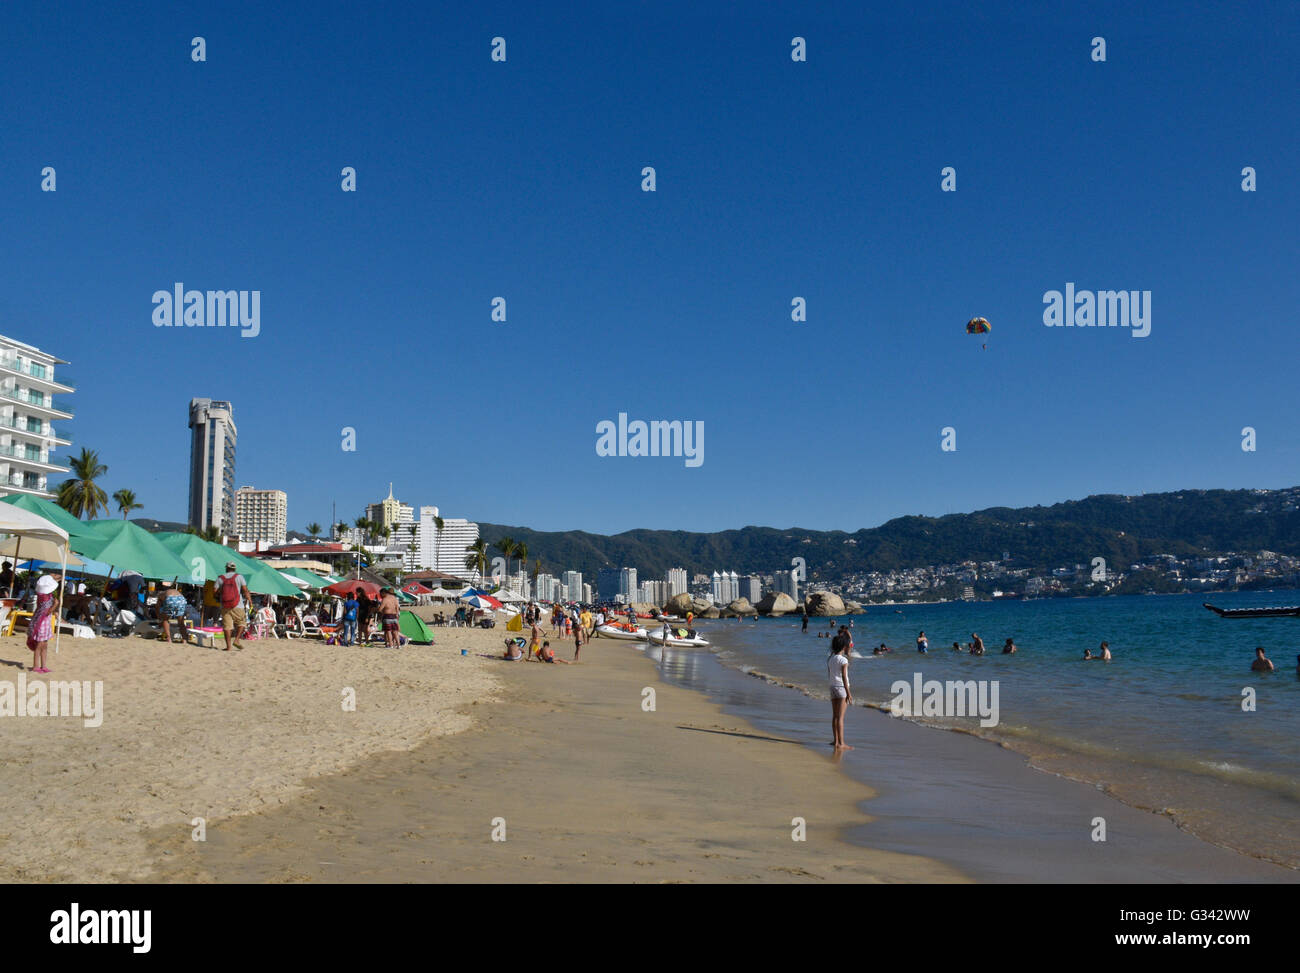 Acapulco Beach in scena con i vacanzieri. Acapulco, Messico Foto Stock